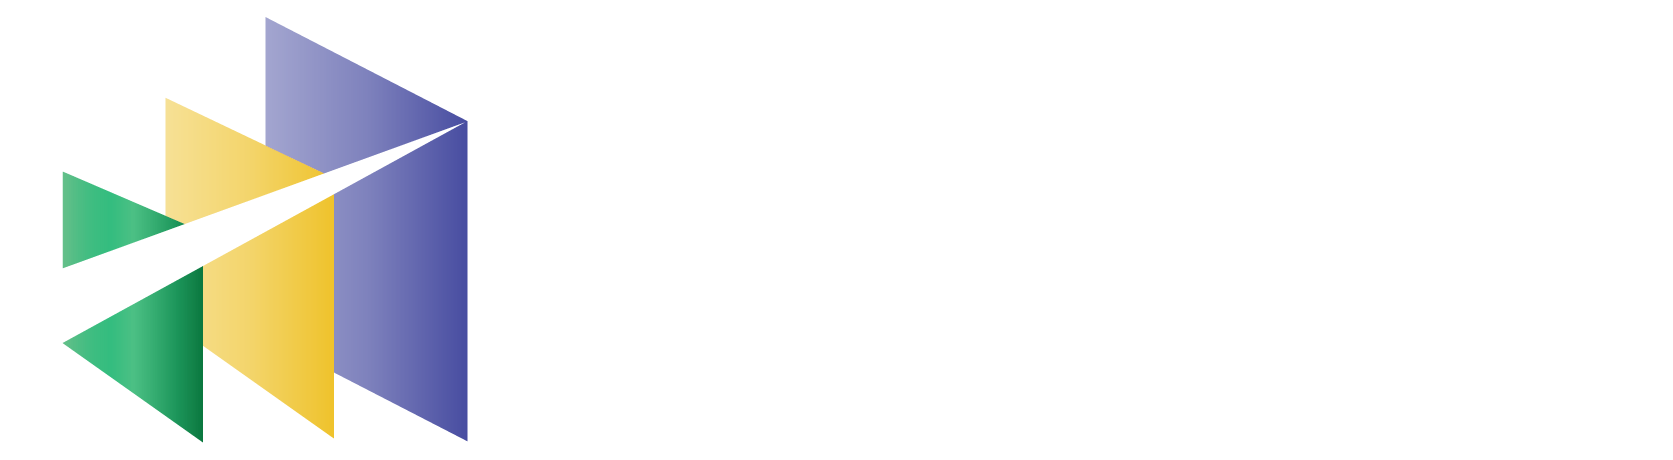 teams4pm-logo